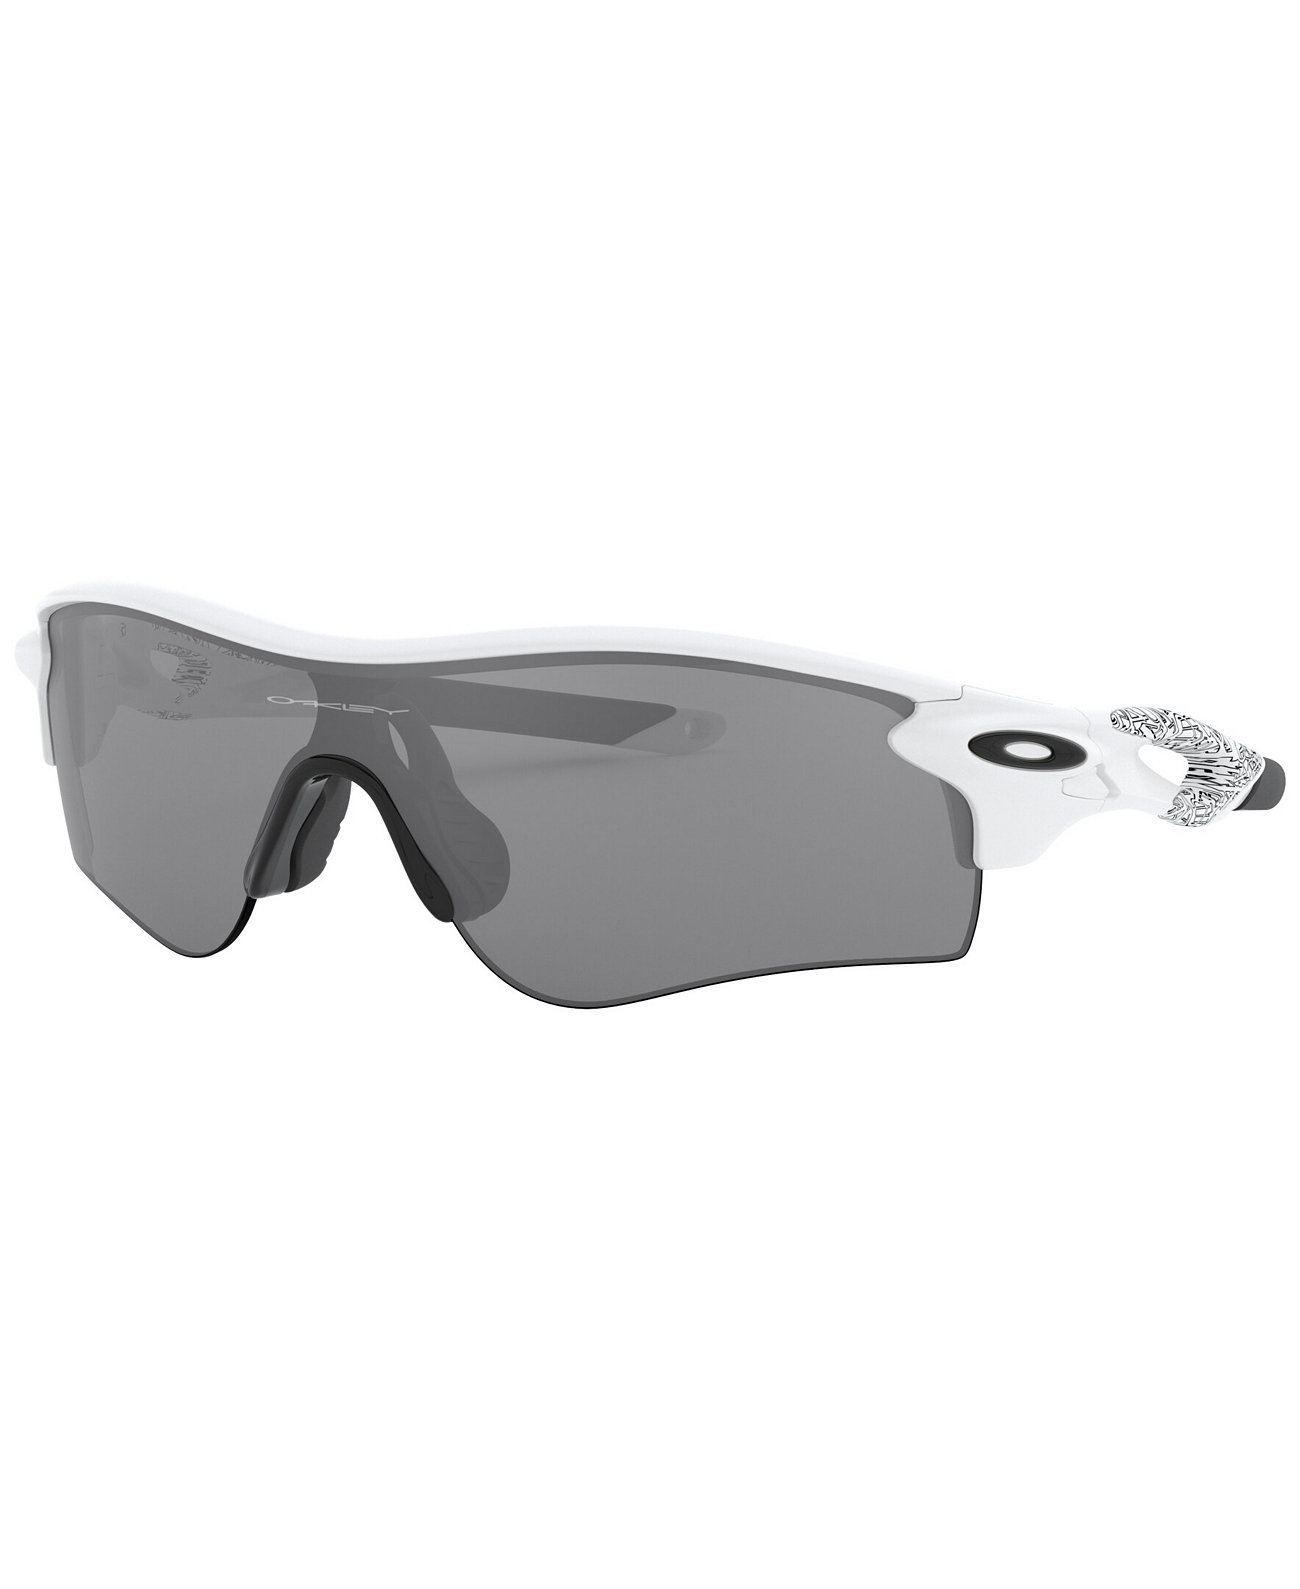 Мужские солнцезащитные очки с низкой перемычкой, OO9206 Radarlock Path 38 Oakley